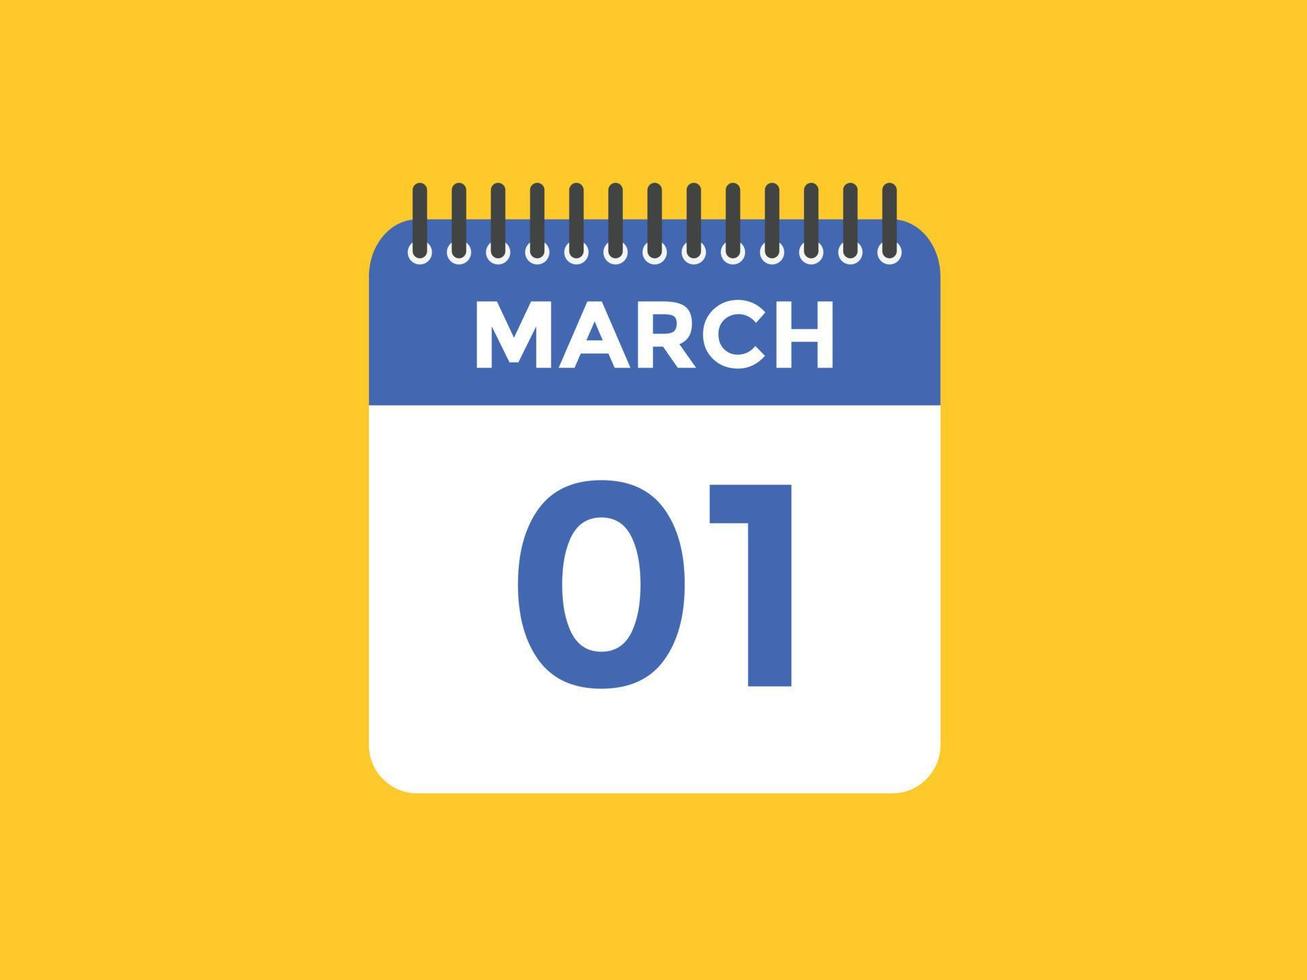 maart 1 kalender herinnering. 1e maart dagelijks kalender icoon sjabloon. kalender 1e maart icoon ontwerp sjabloon. vector illustratie